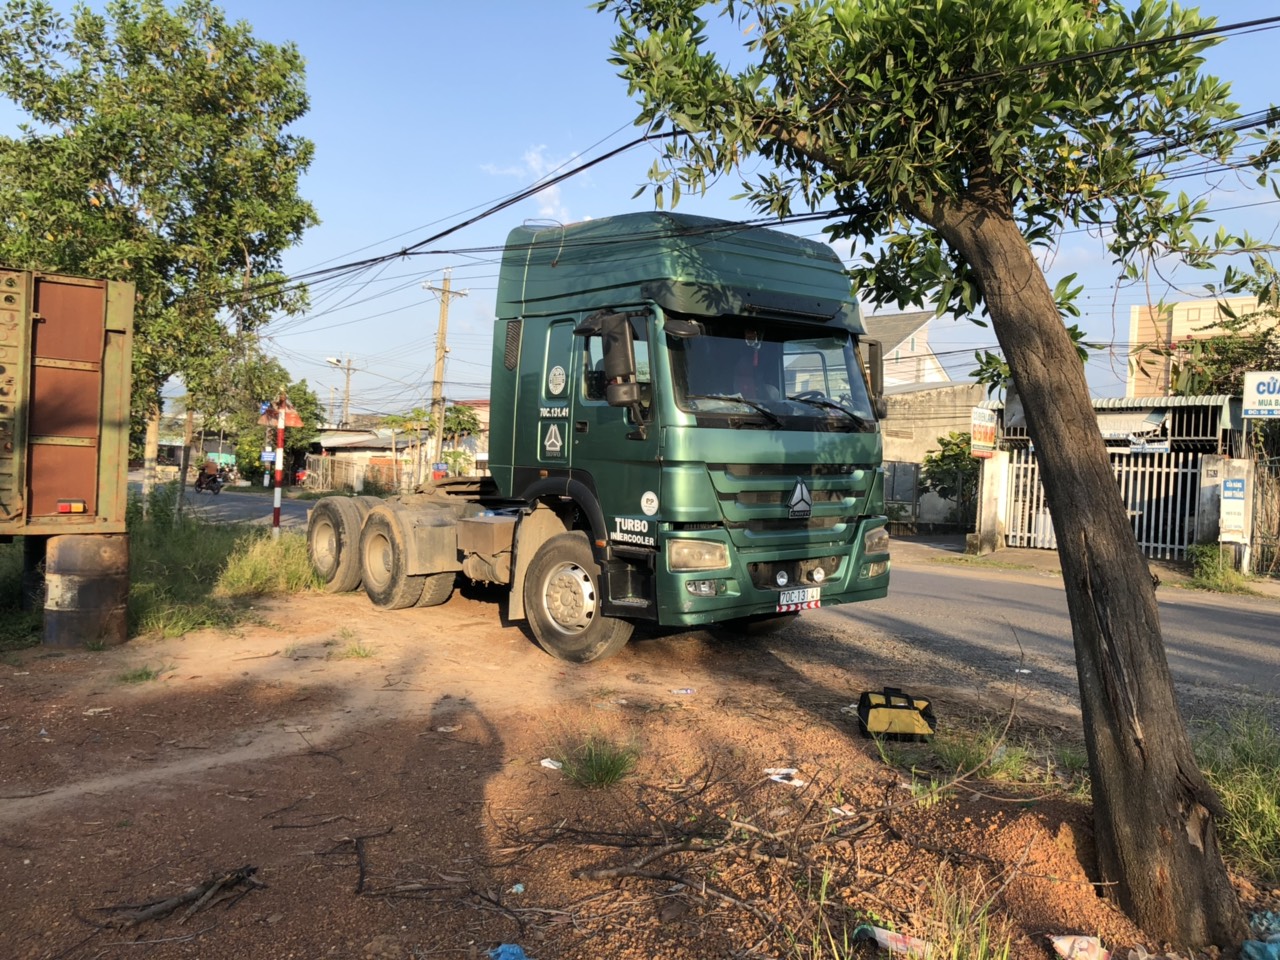 Lắp đặt thiết bị định vị xe ô tô nhãn hiệu Bình Bình BM05 cho xe 70C13141 tại ngã tư Bình Minh Tây Ninh